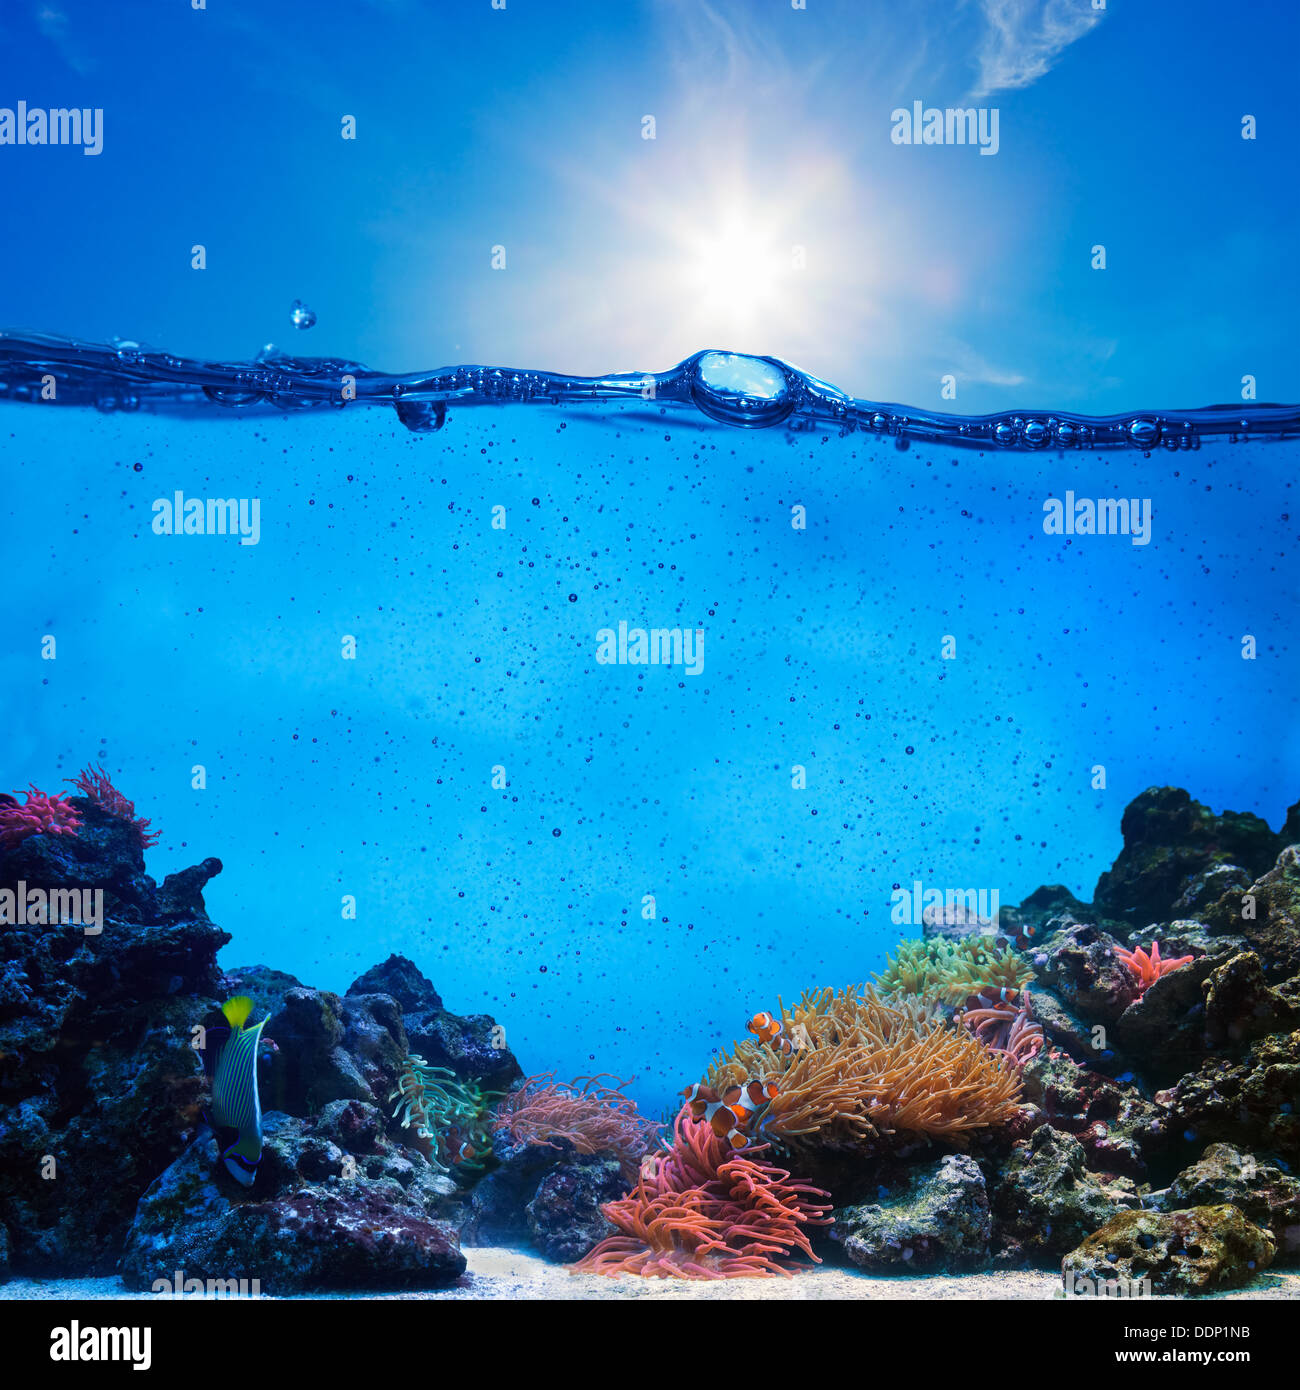 Die Hälfte Unterwasser Szene. Coral Reef, blau sonnigen Himmel. Stockfoto